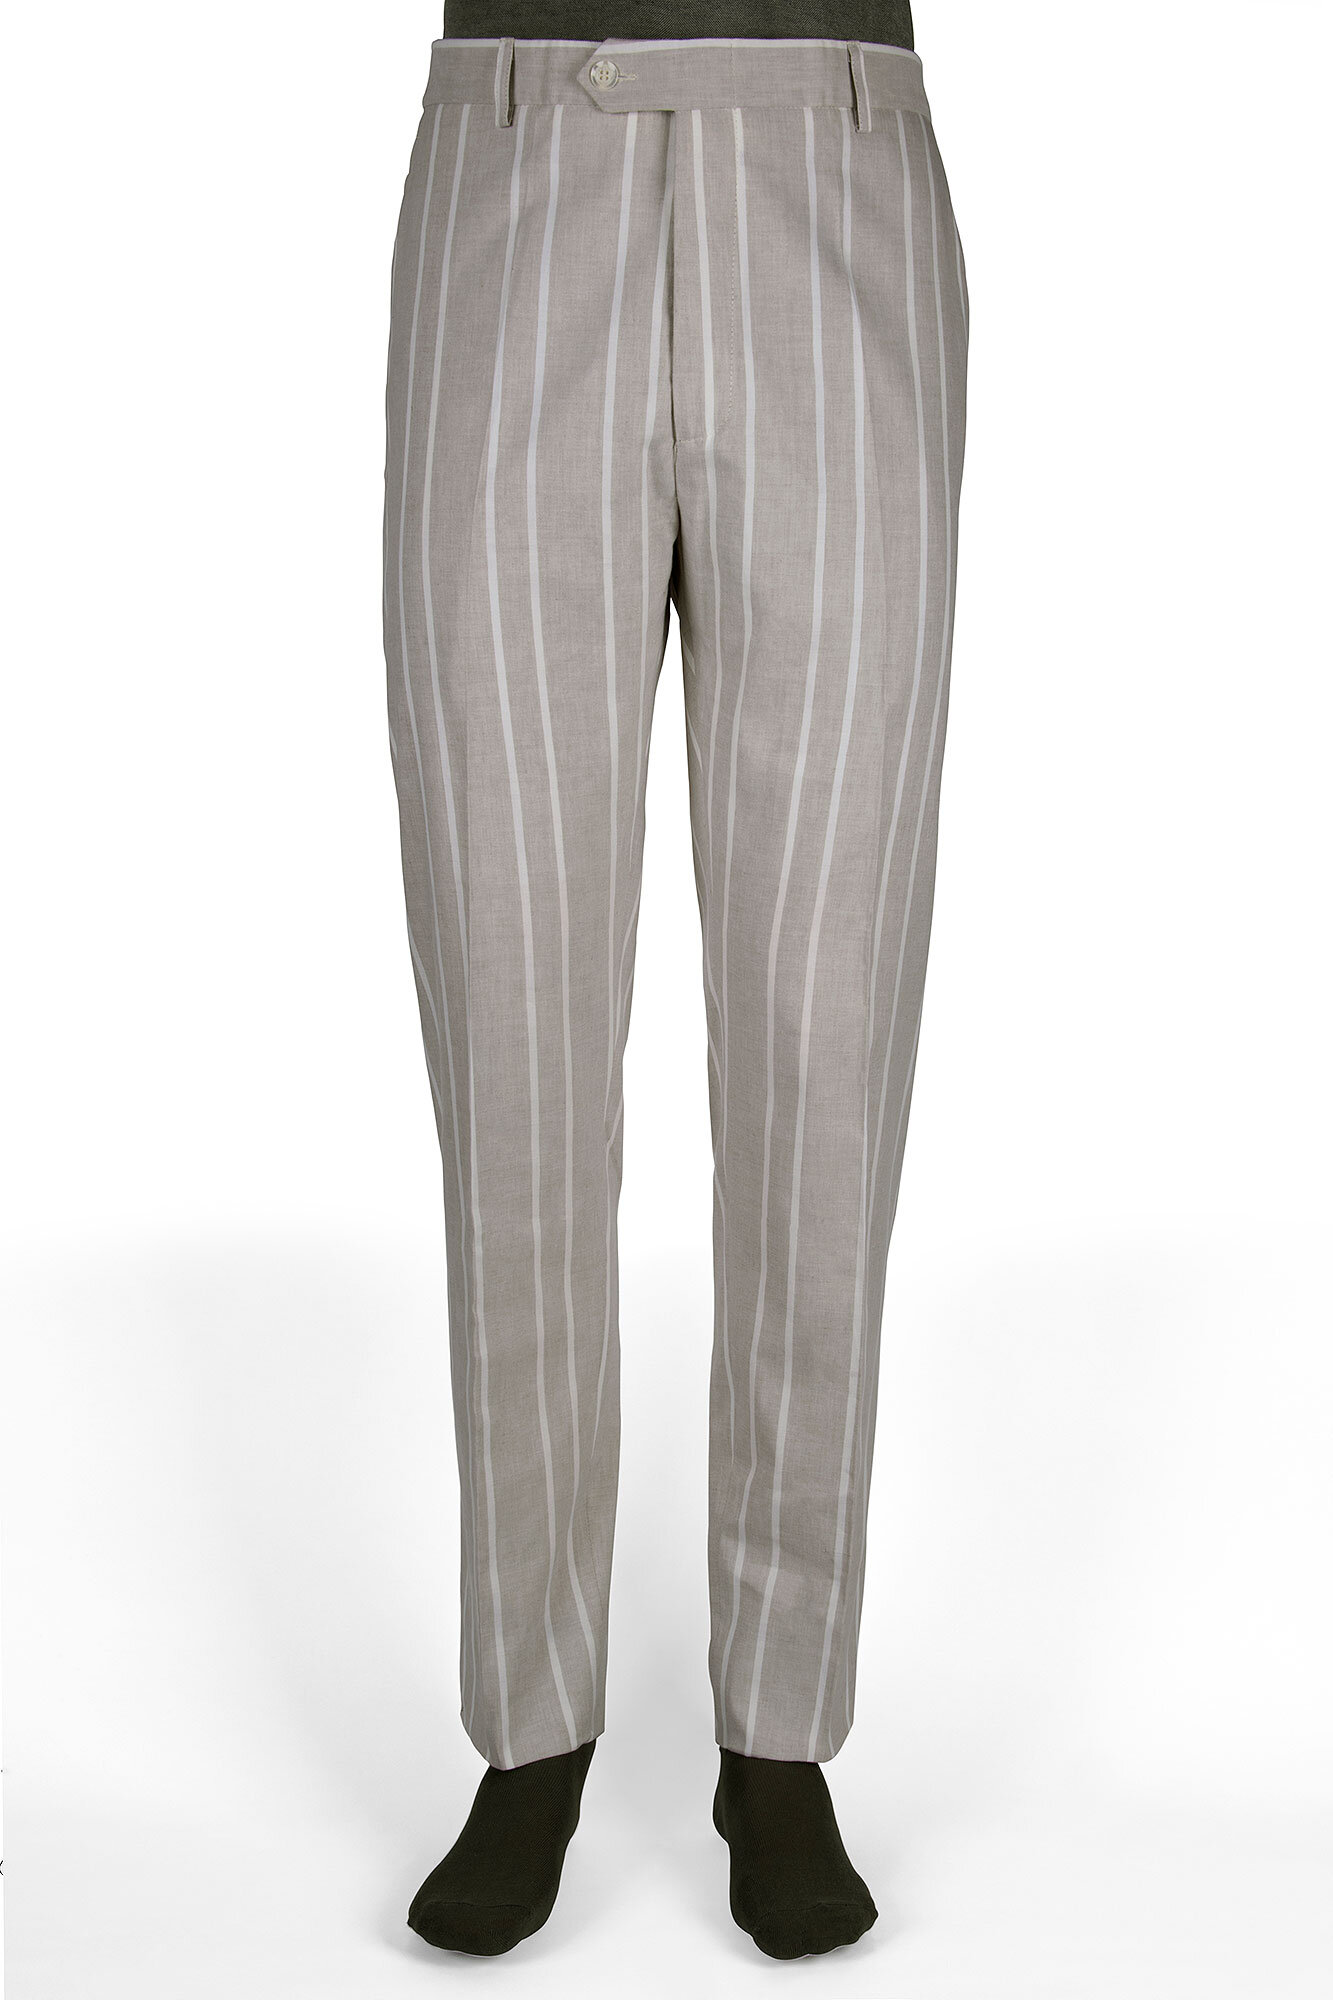 Pantalon de vestir slim fit gris perla con rayas blancas — Casa del Lino